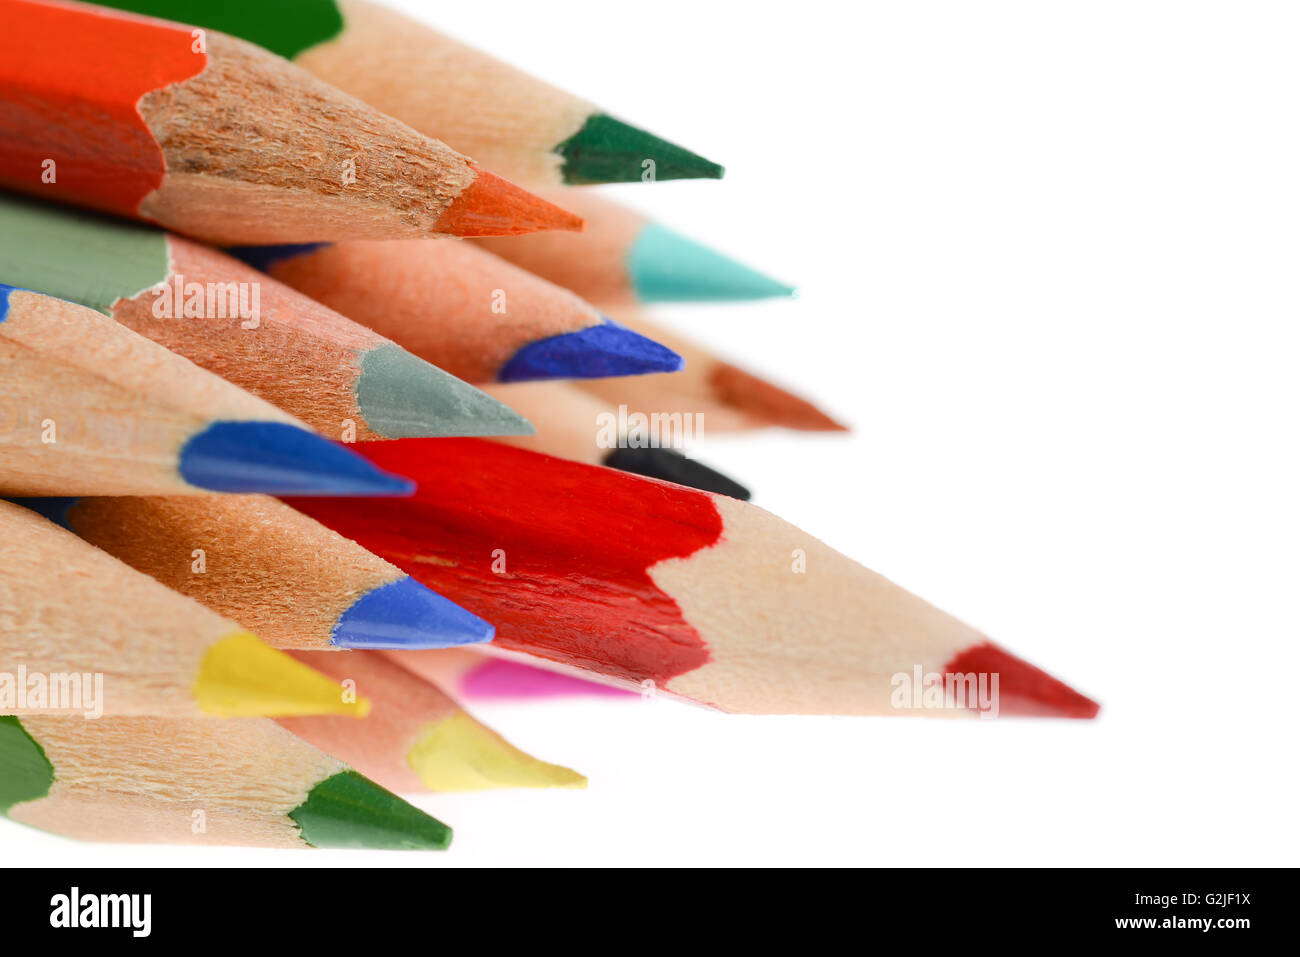 Beaucoup de crayons de différentes couleurs et crayon rouge à l'avant Banque D'Images